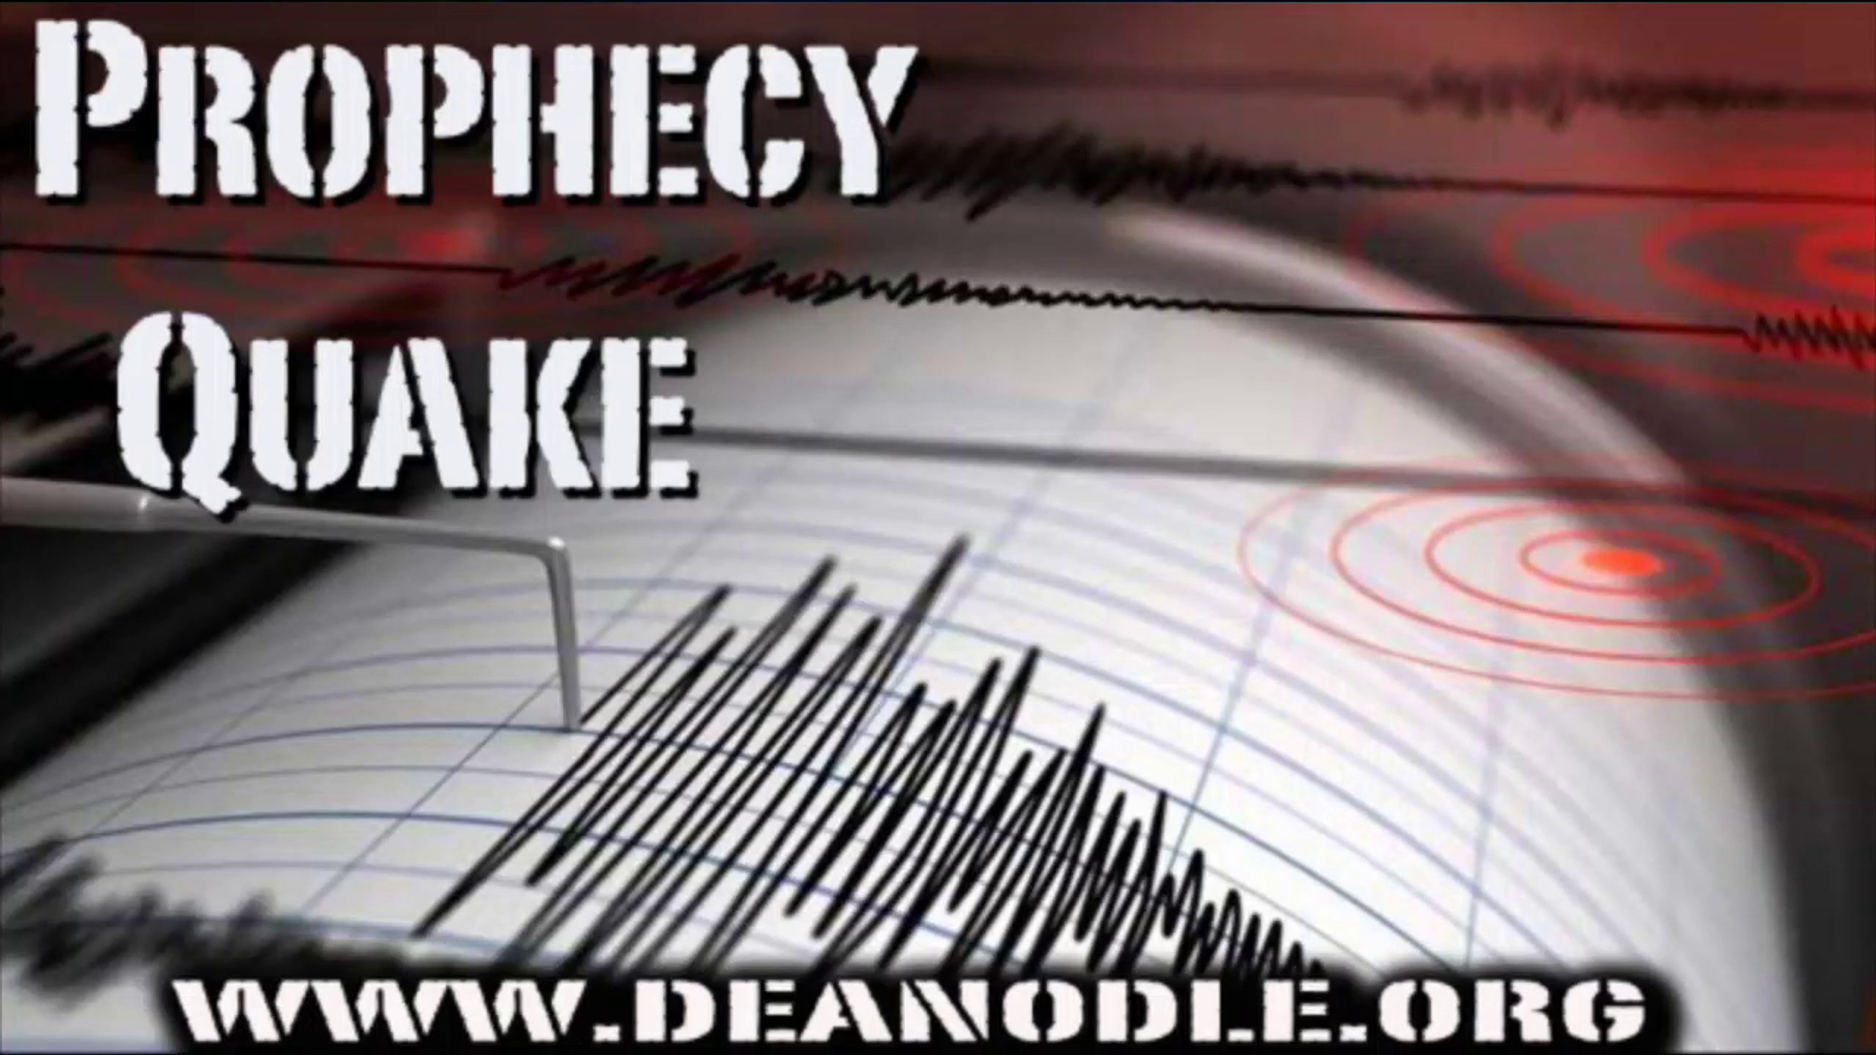 Prophecy Quake